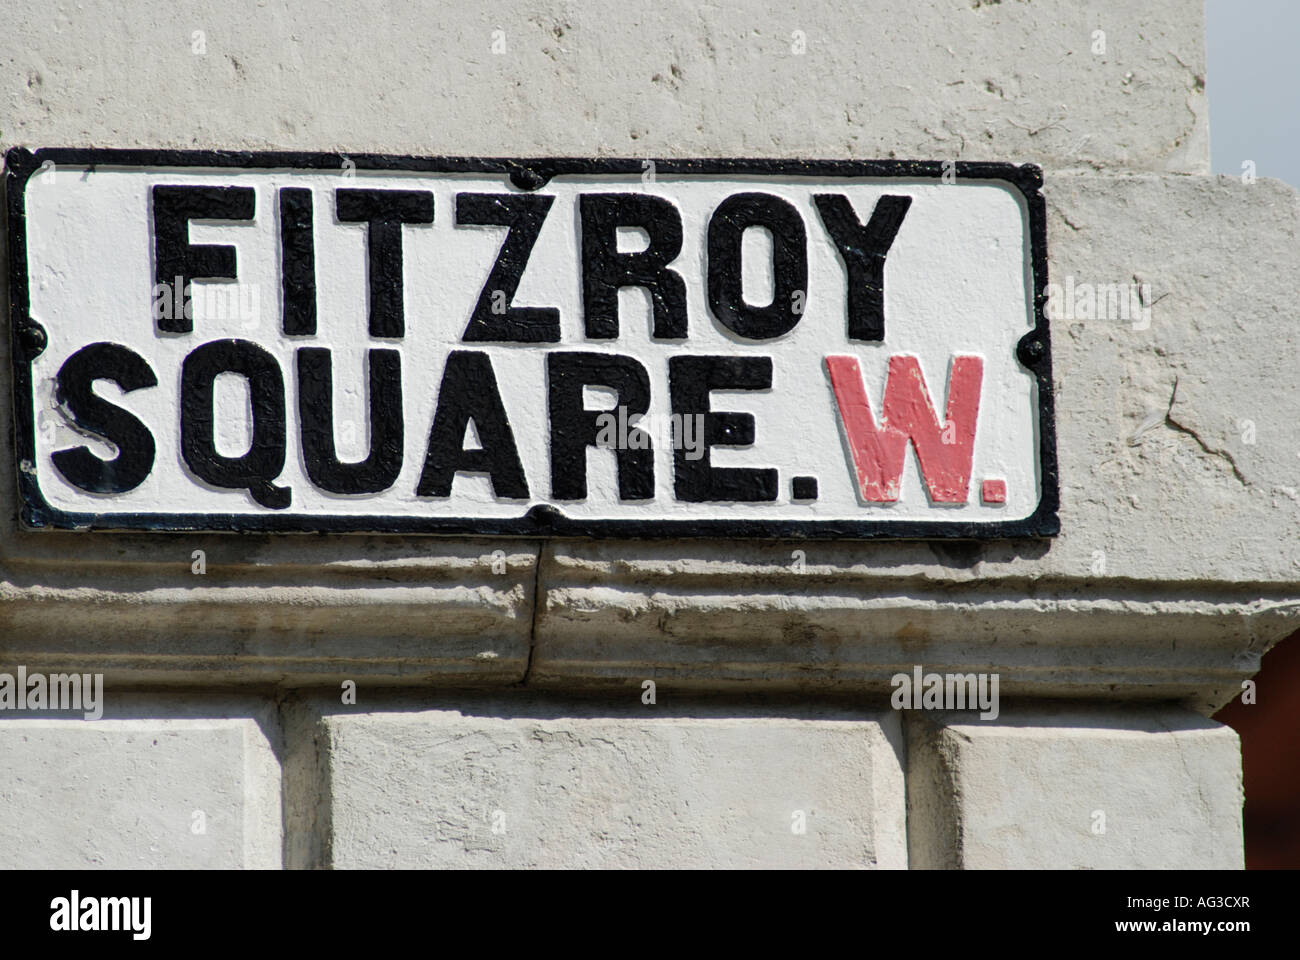 Fitzroy Square W London Straßenschild auf Steinmauer Stockfoto